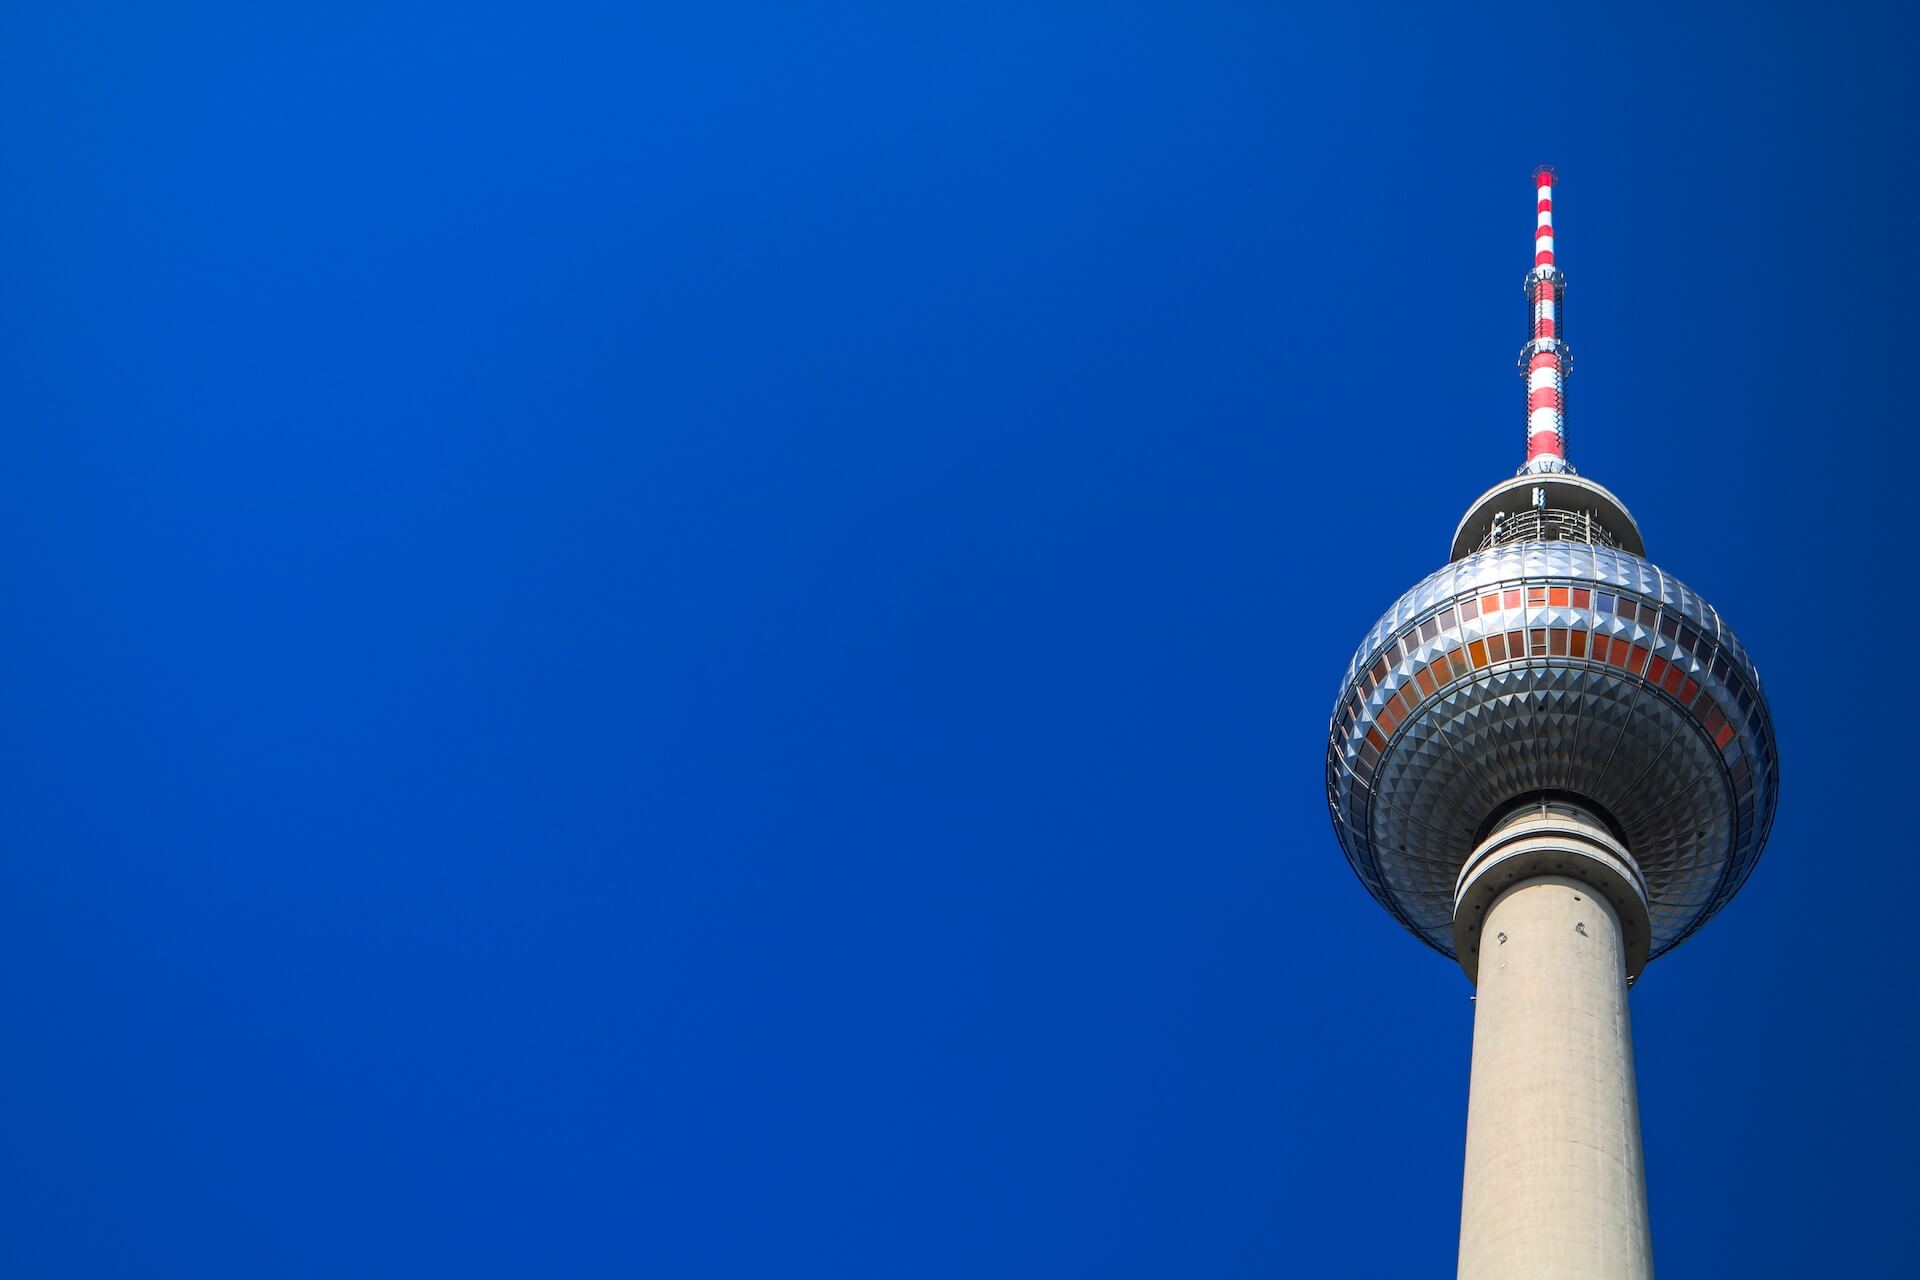 berlin tv tower in blue sky